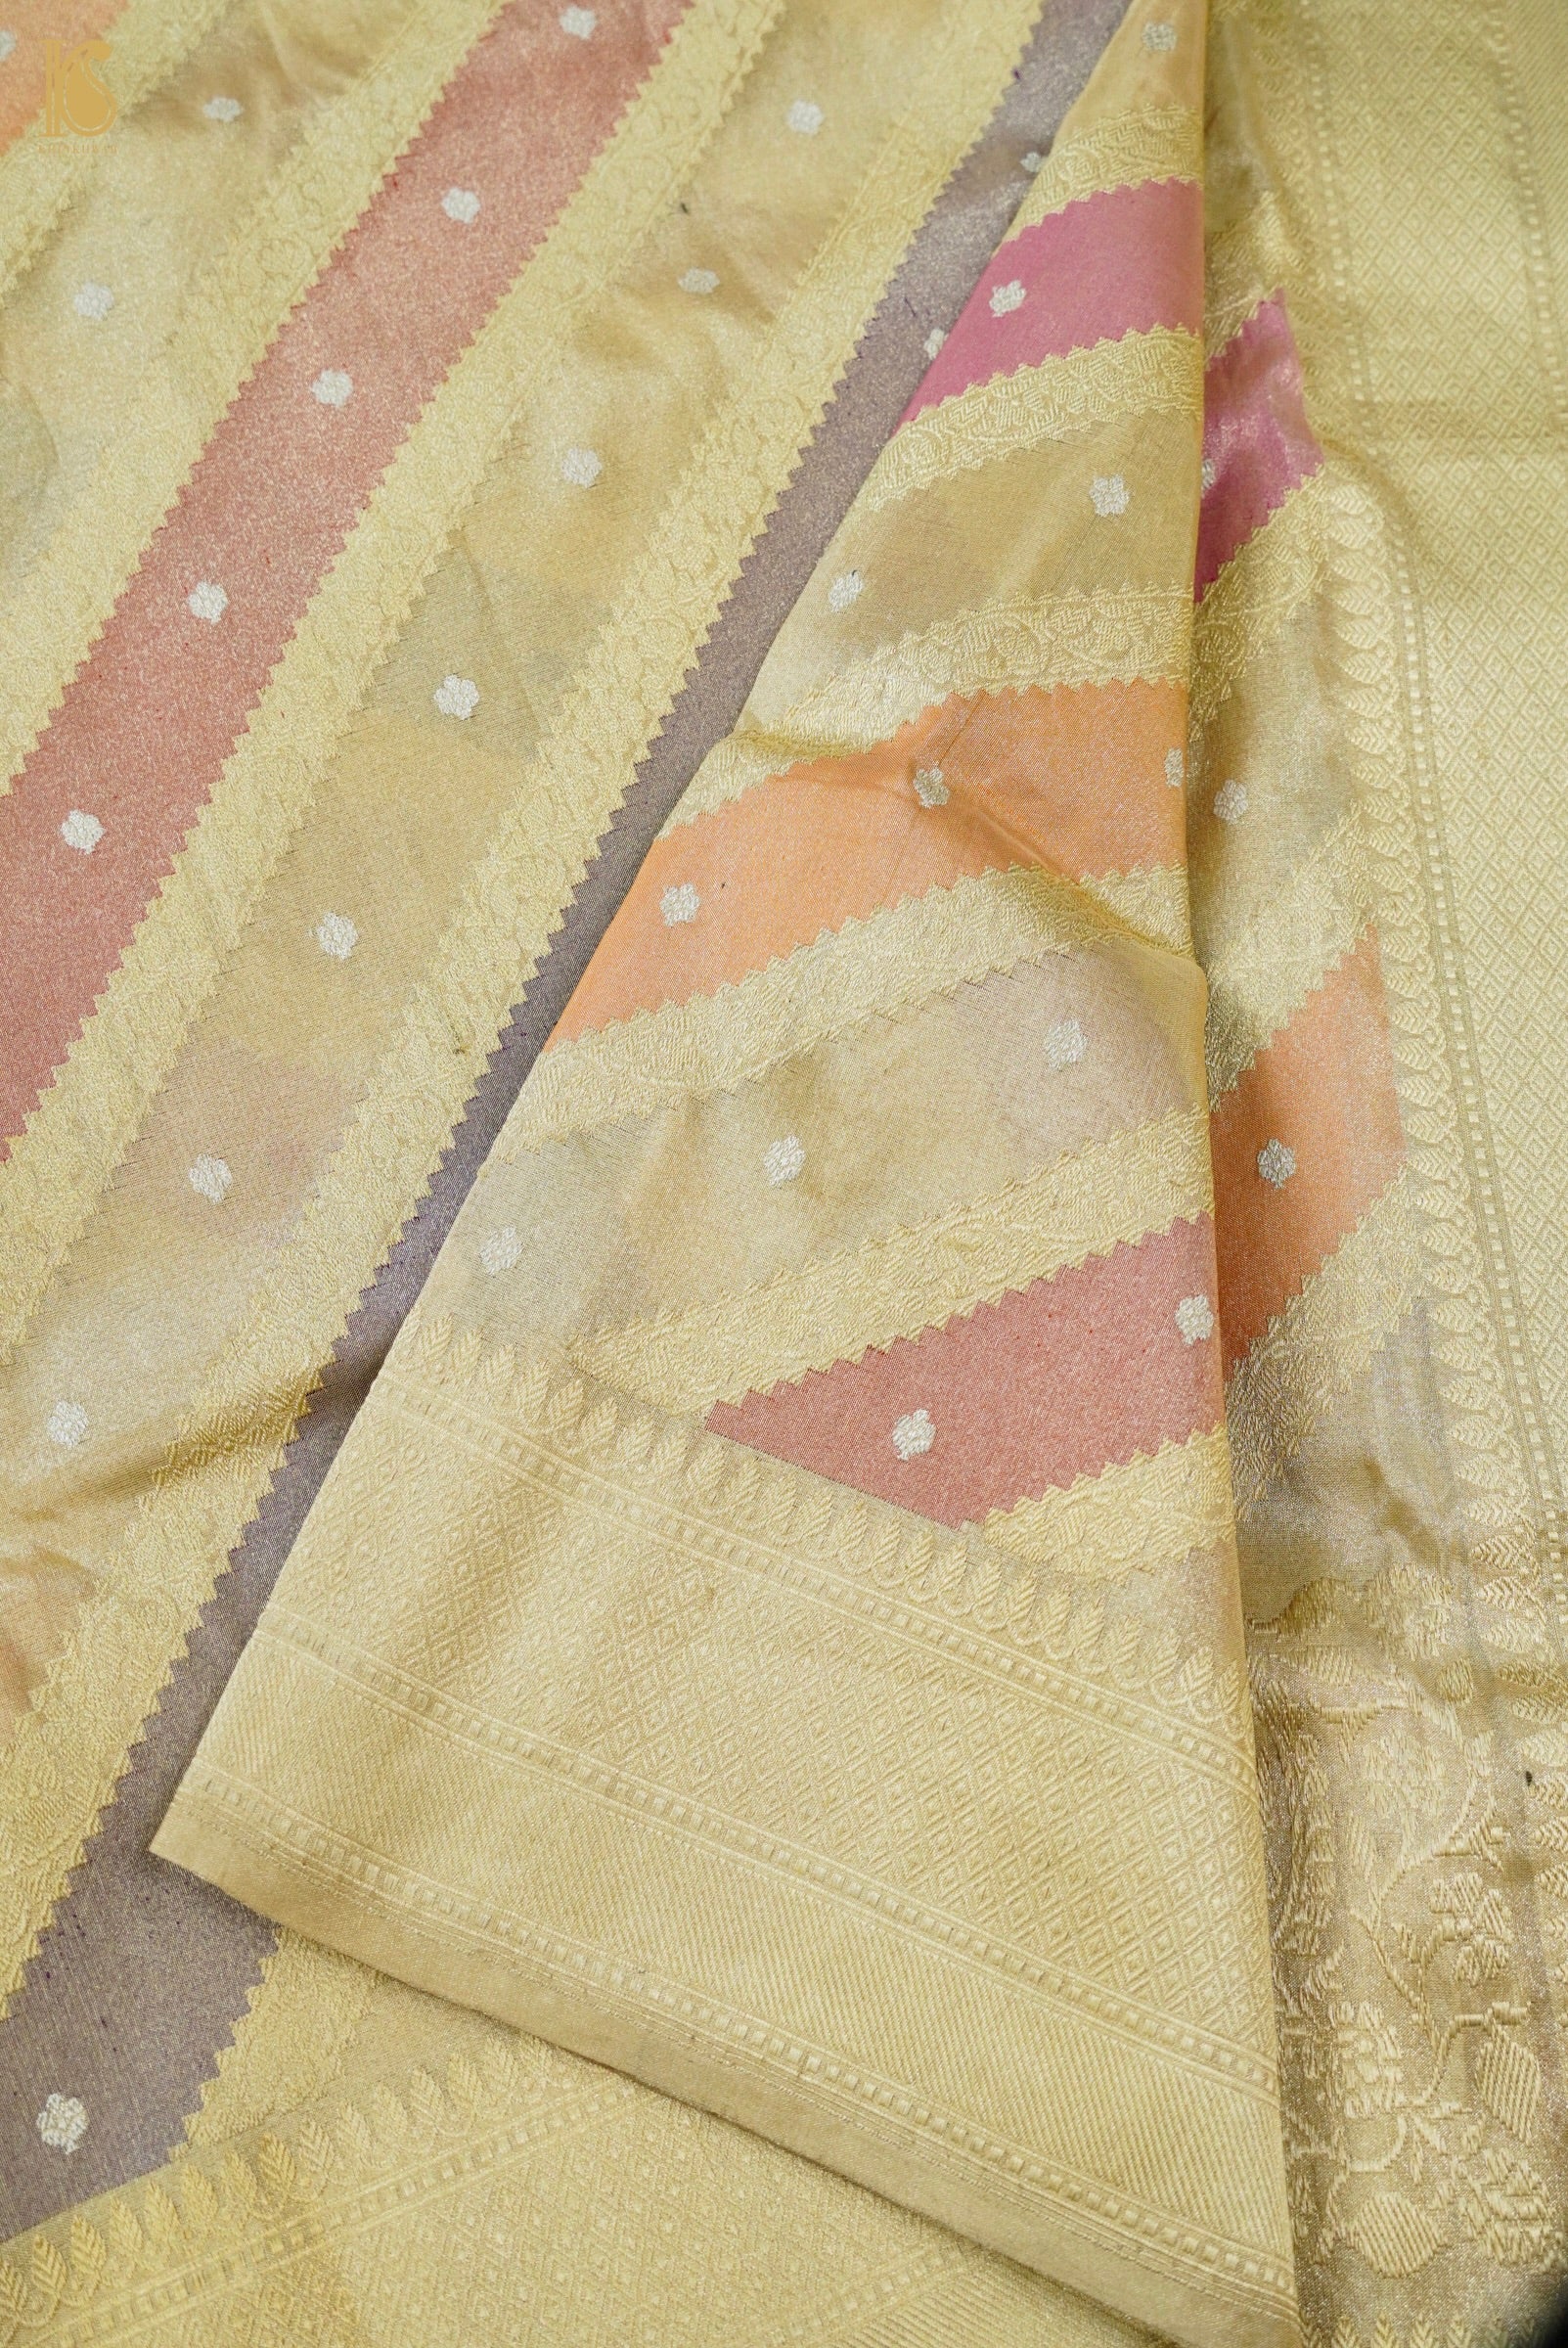 Handloom Banarasi Rangkat Tissue by Silk Saree